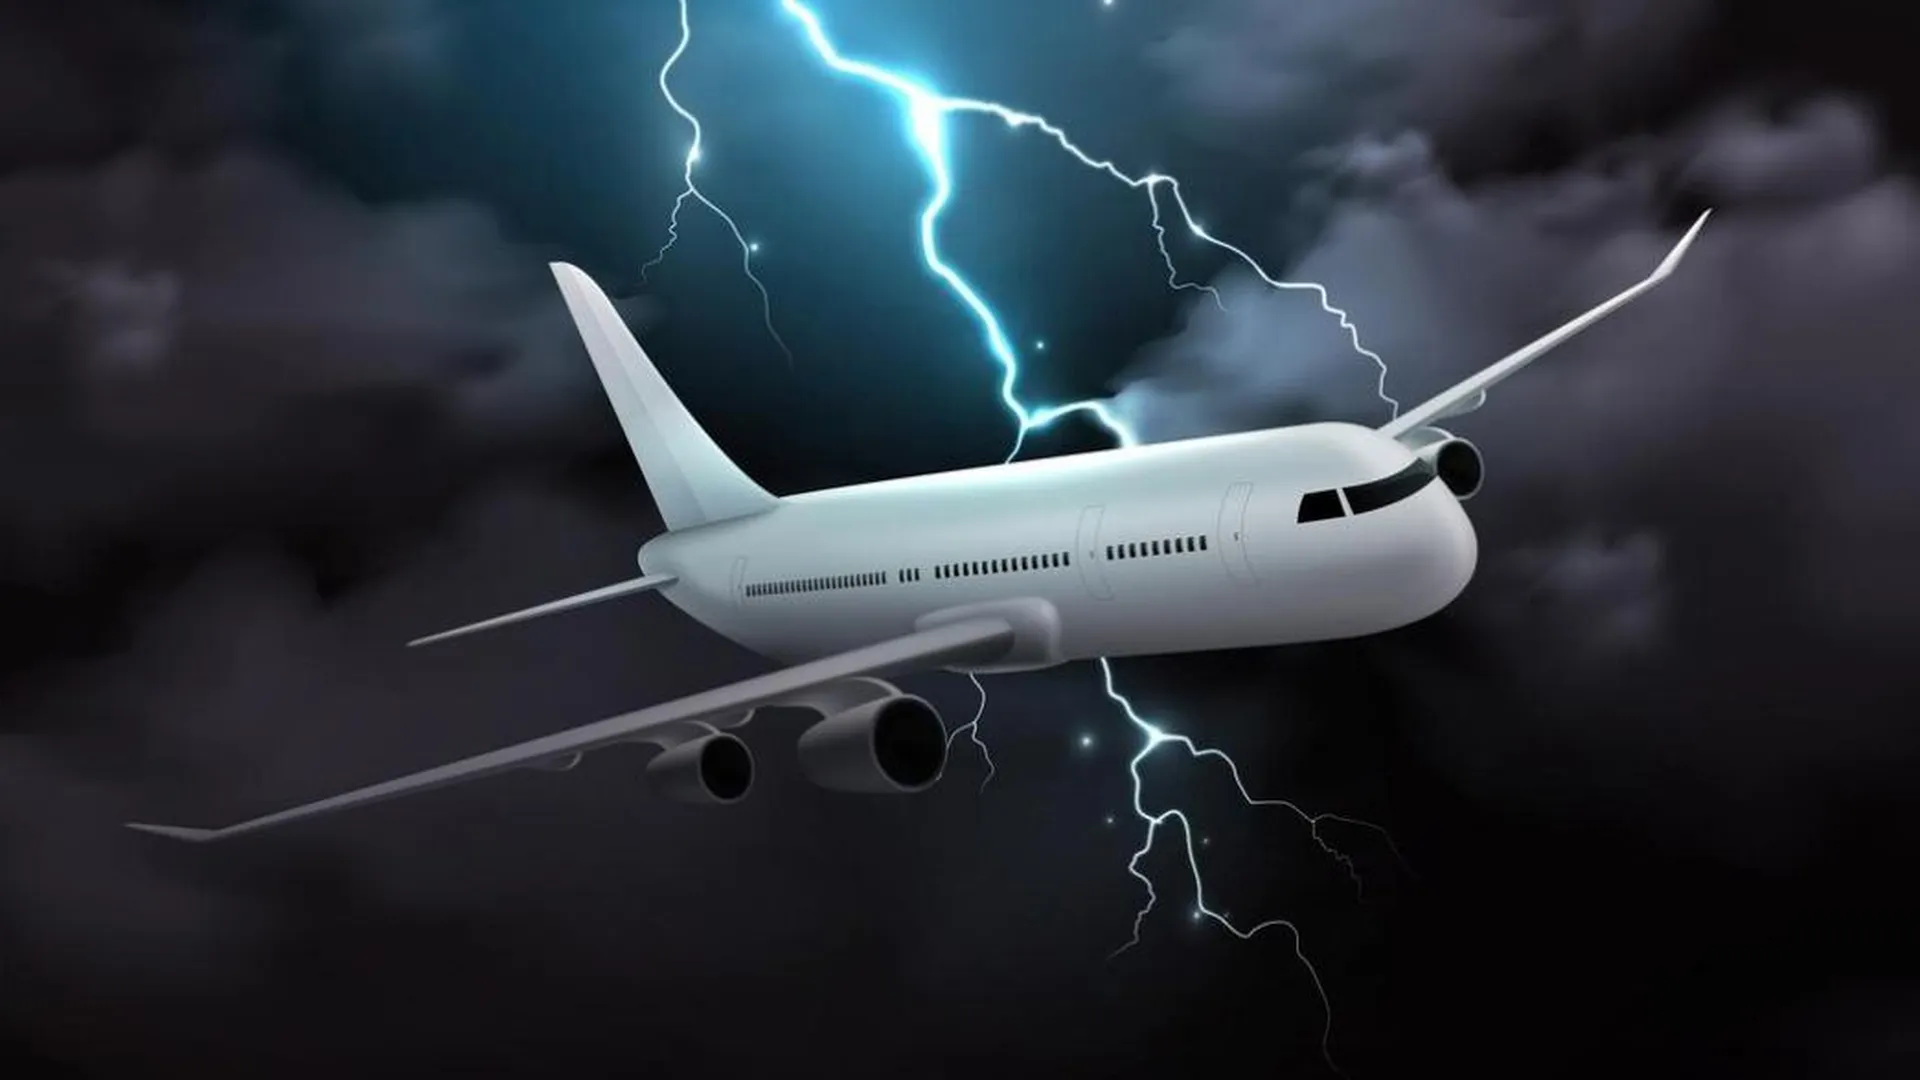 Видео удара молнии в пассажирский самолет в Канаде появилось в Сети